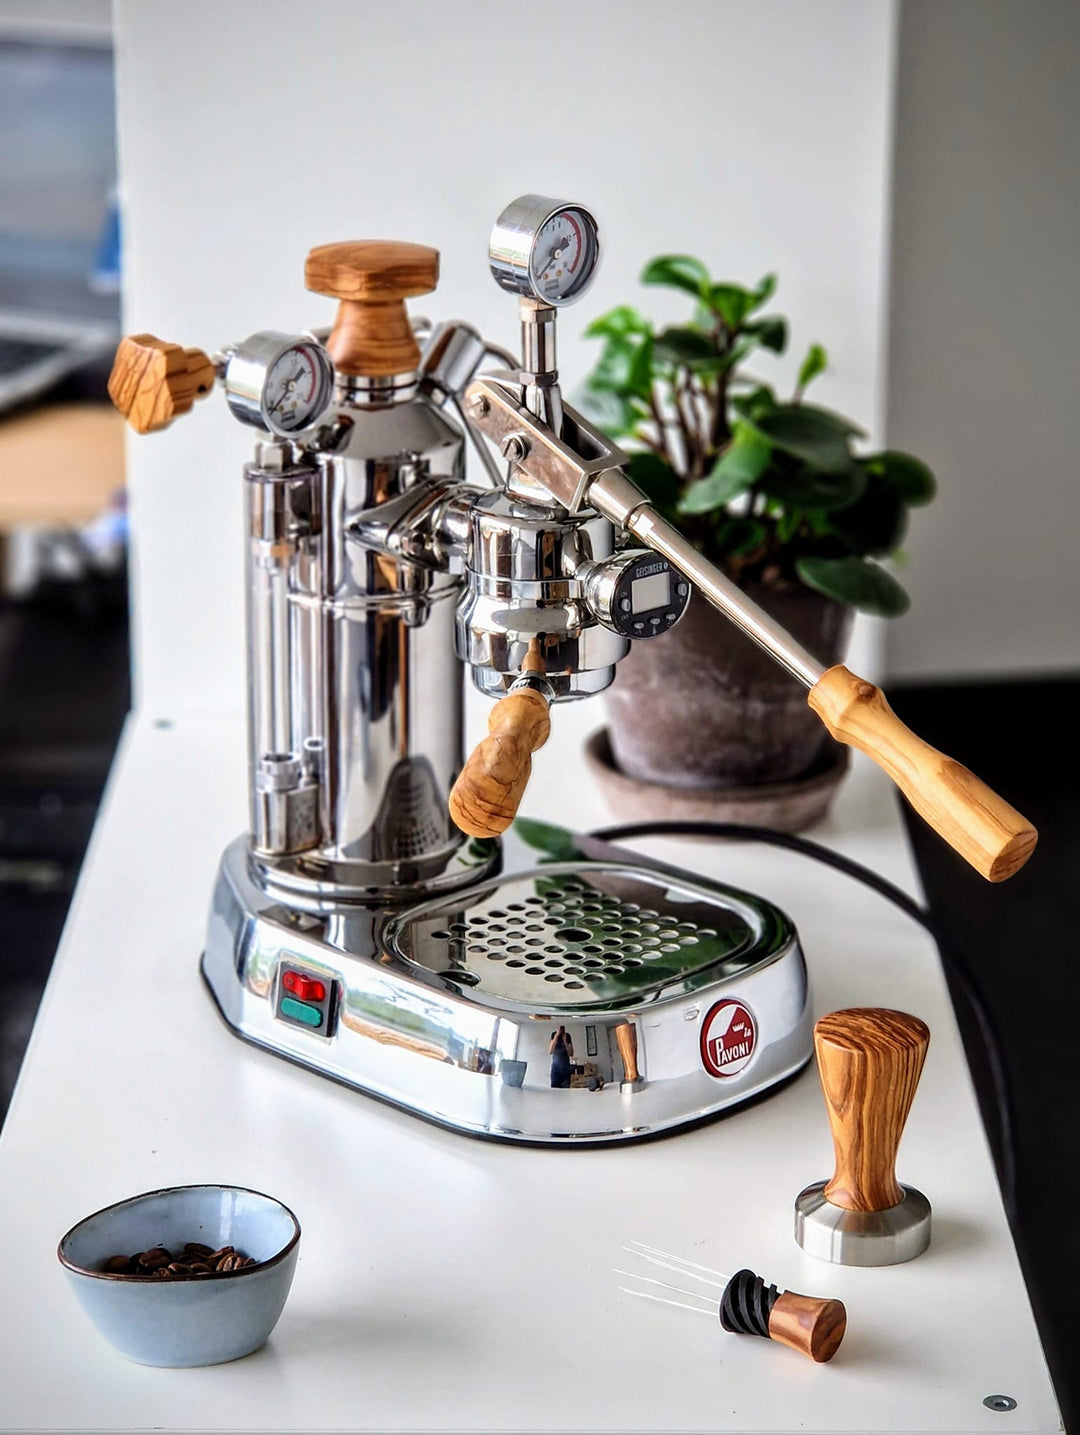 La Pavoni espresso machine